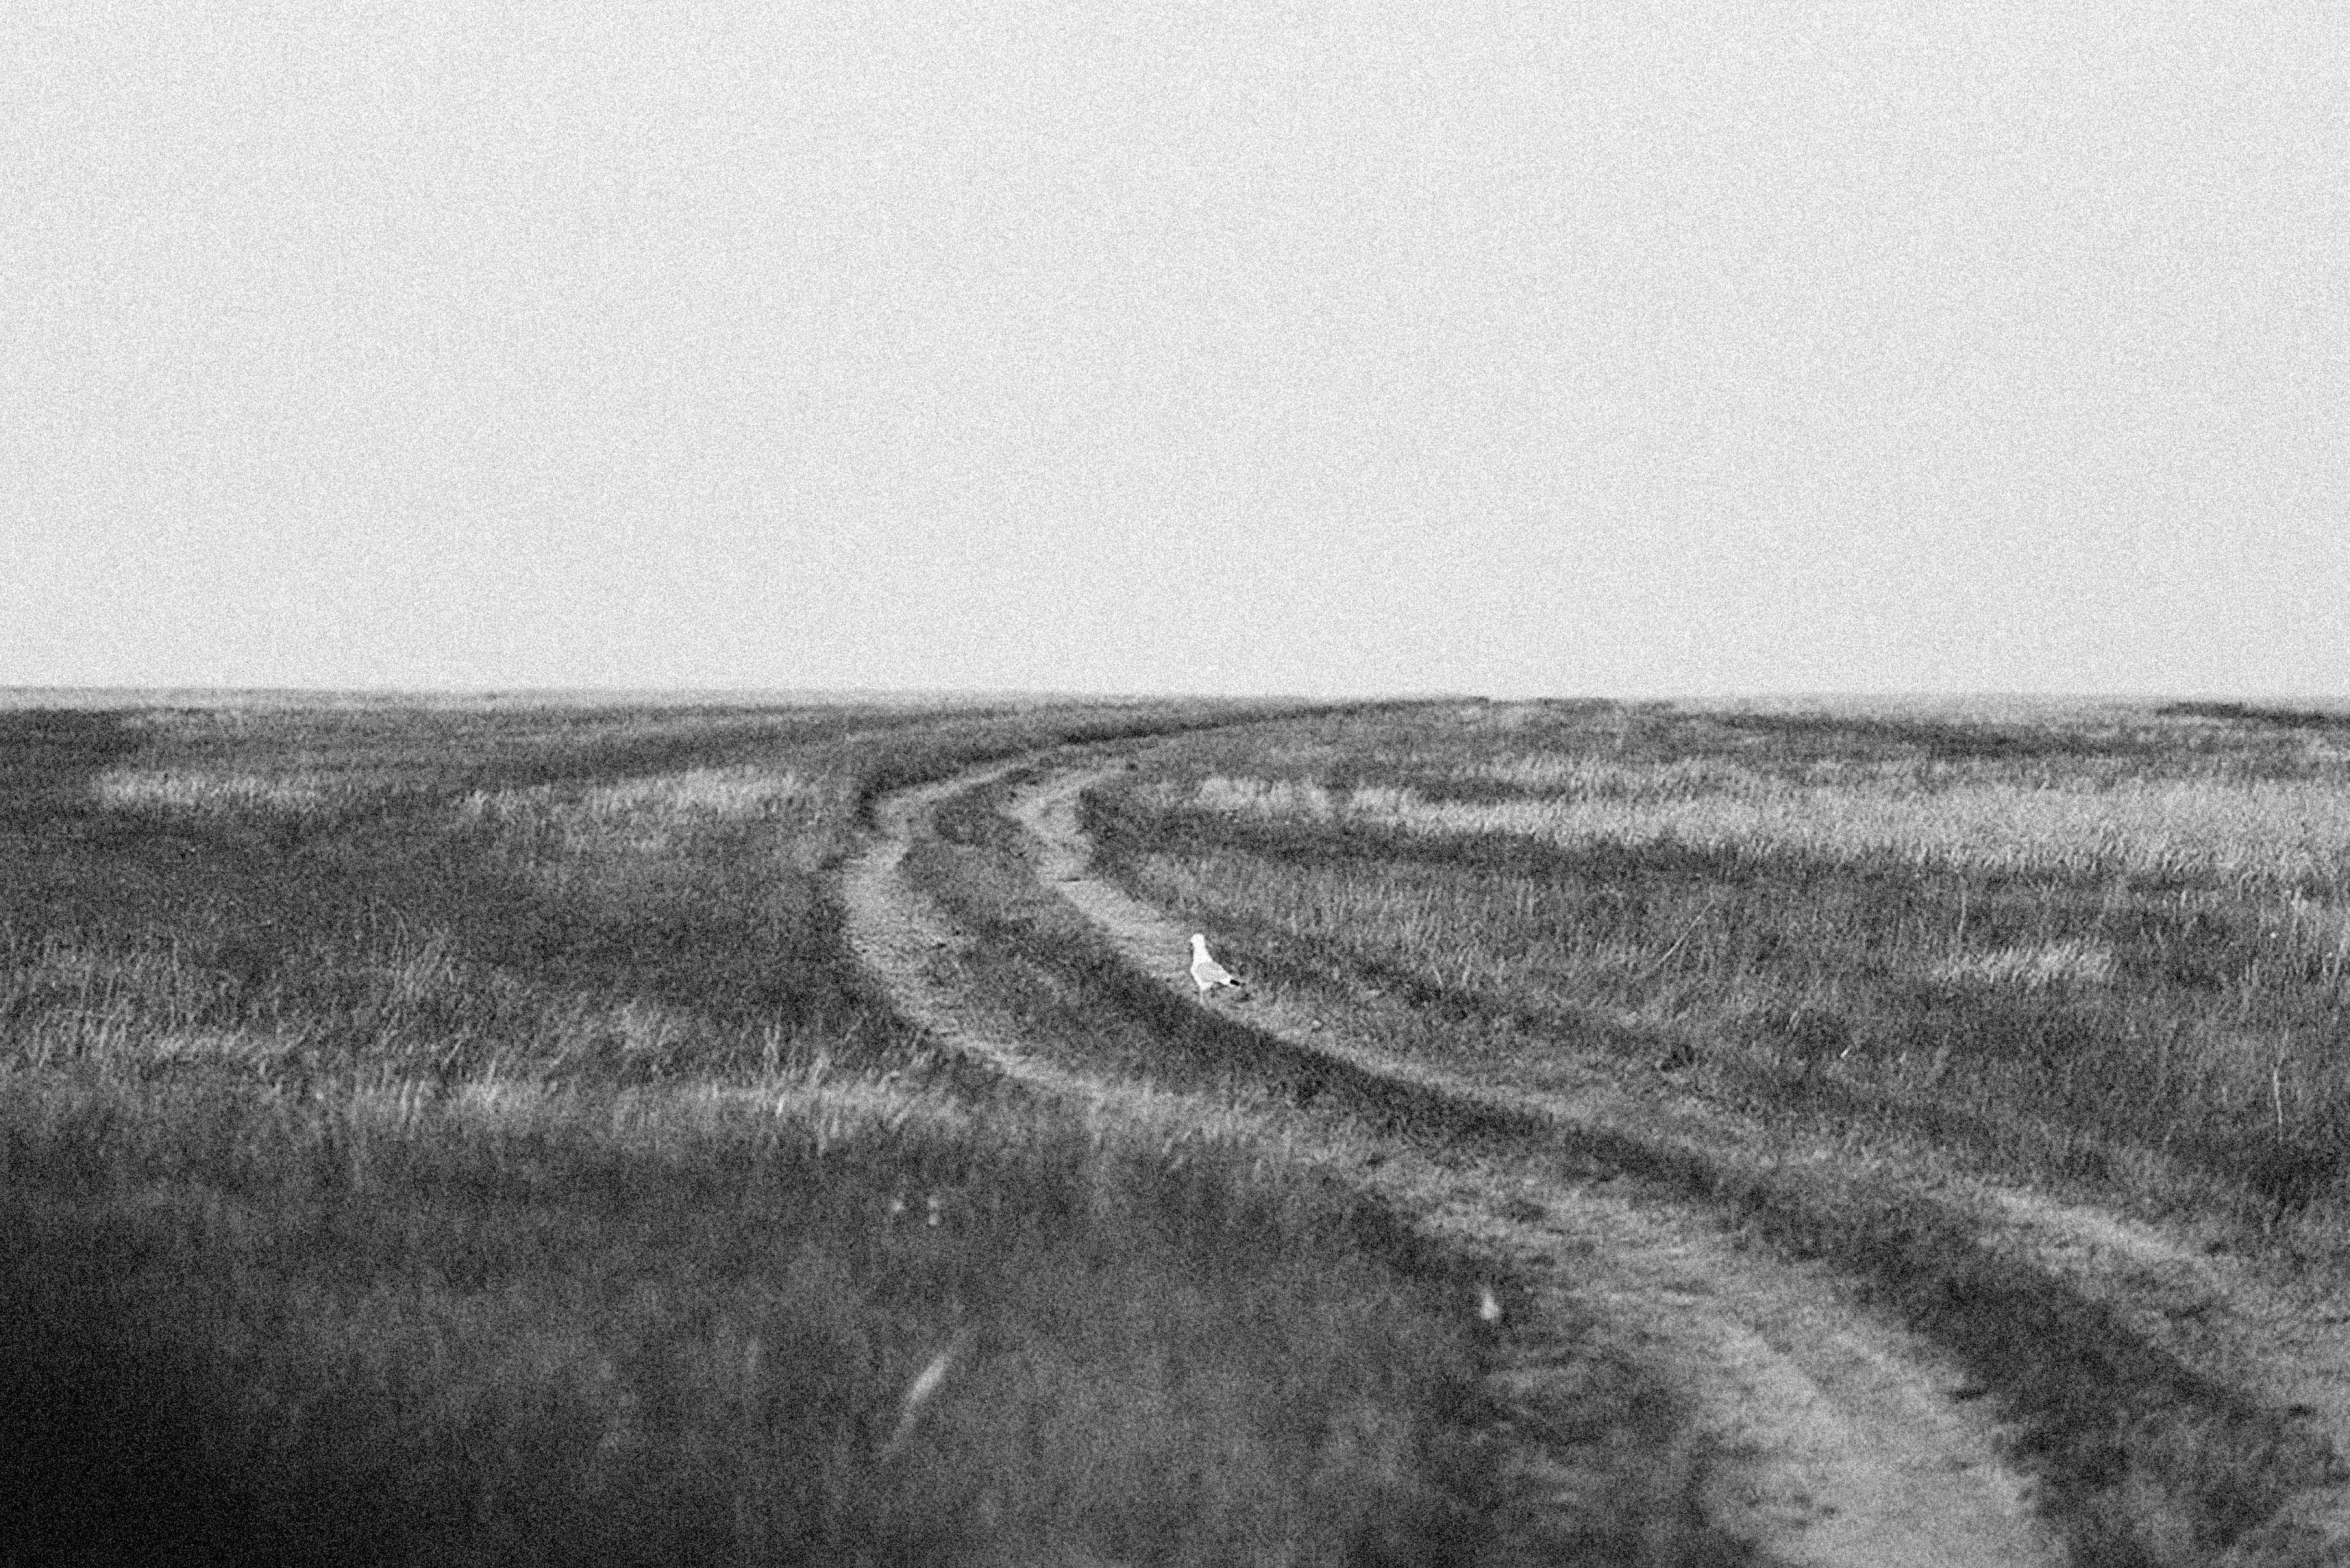 a lone horse walking across a field near the ocean